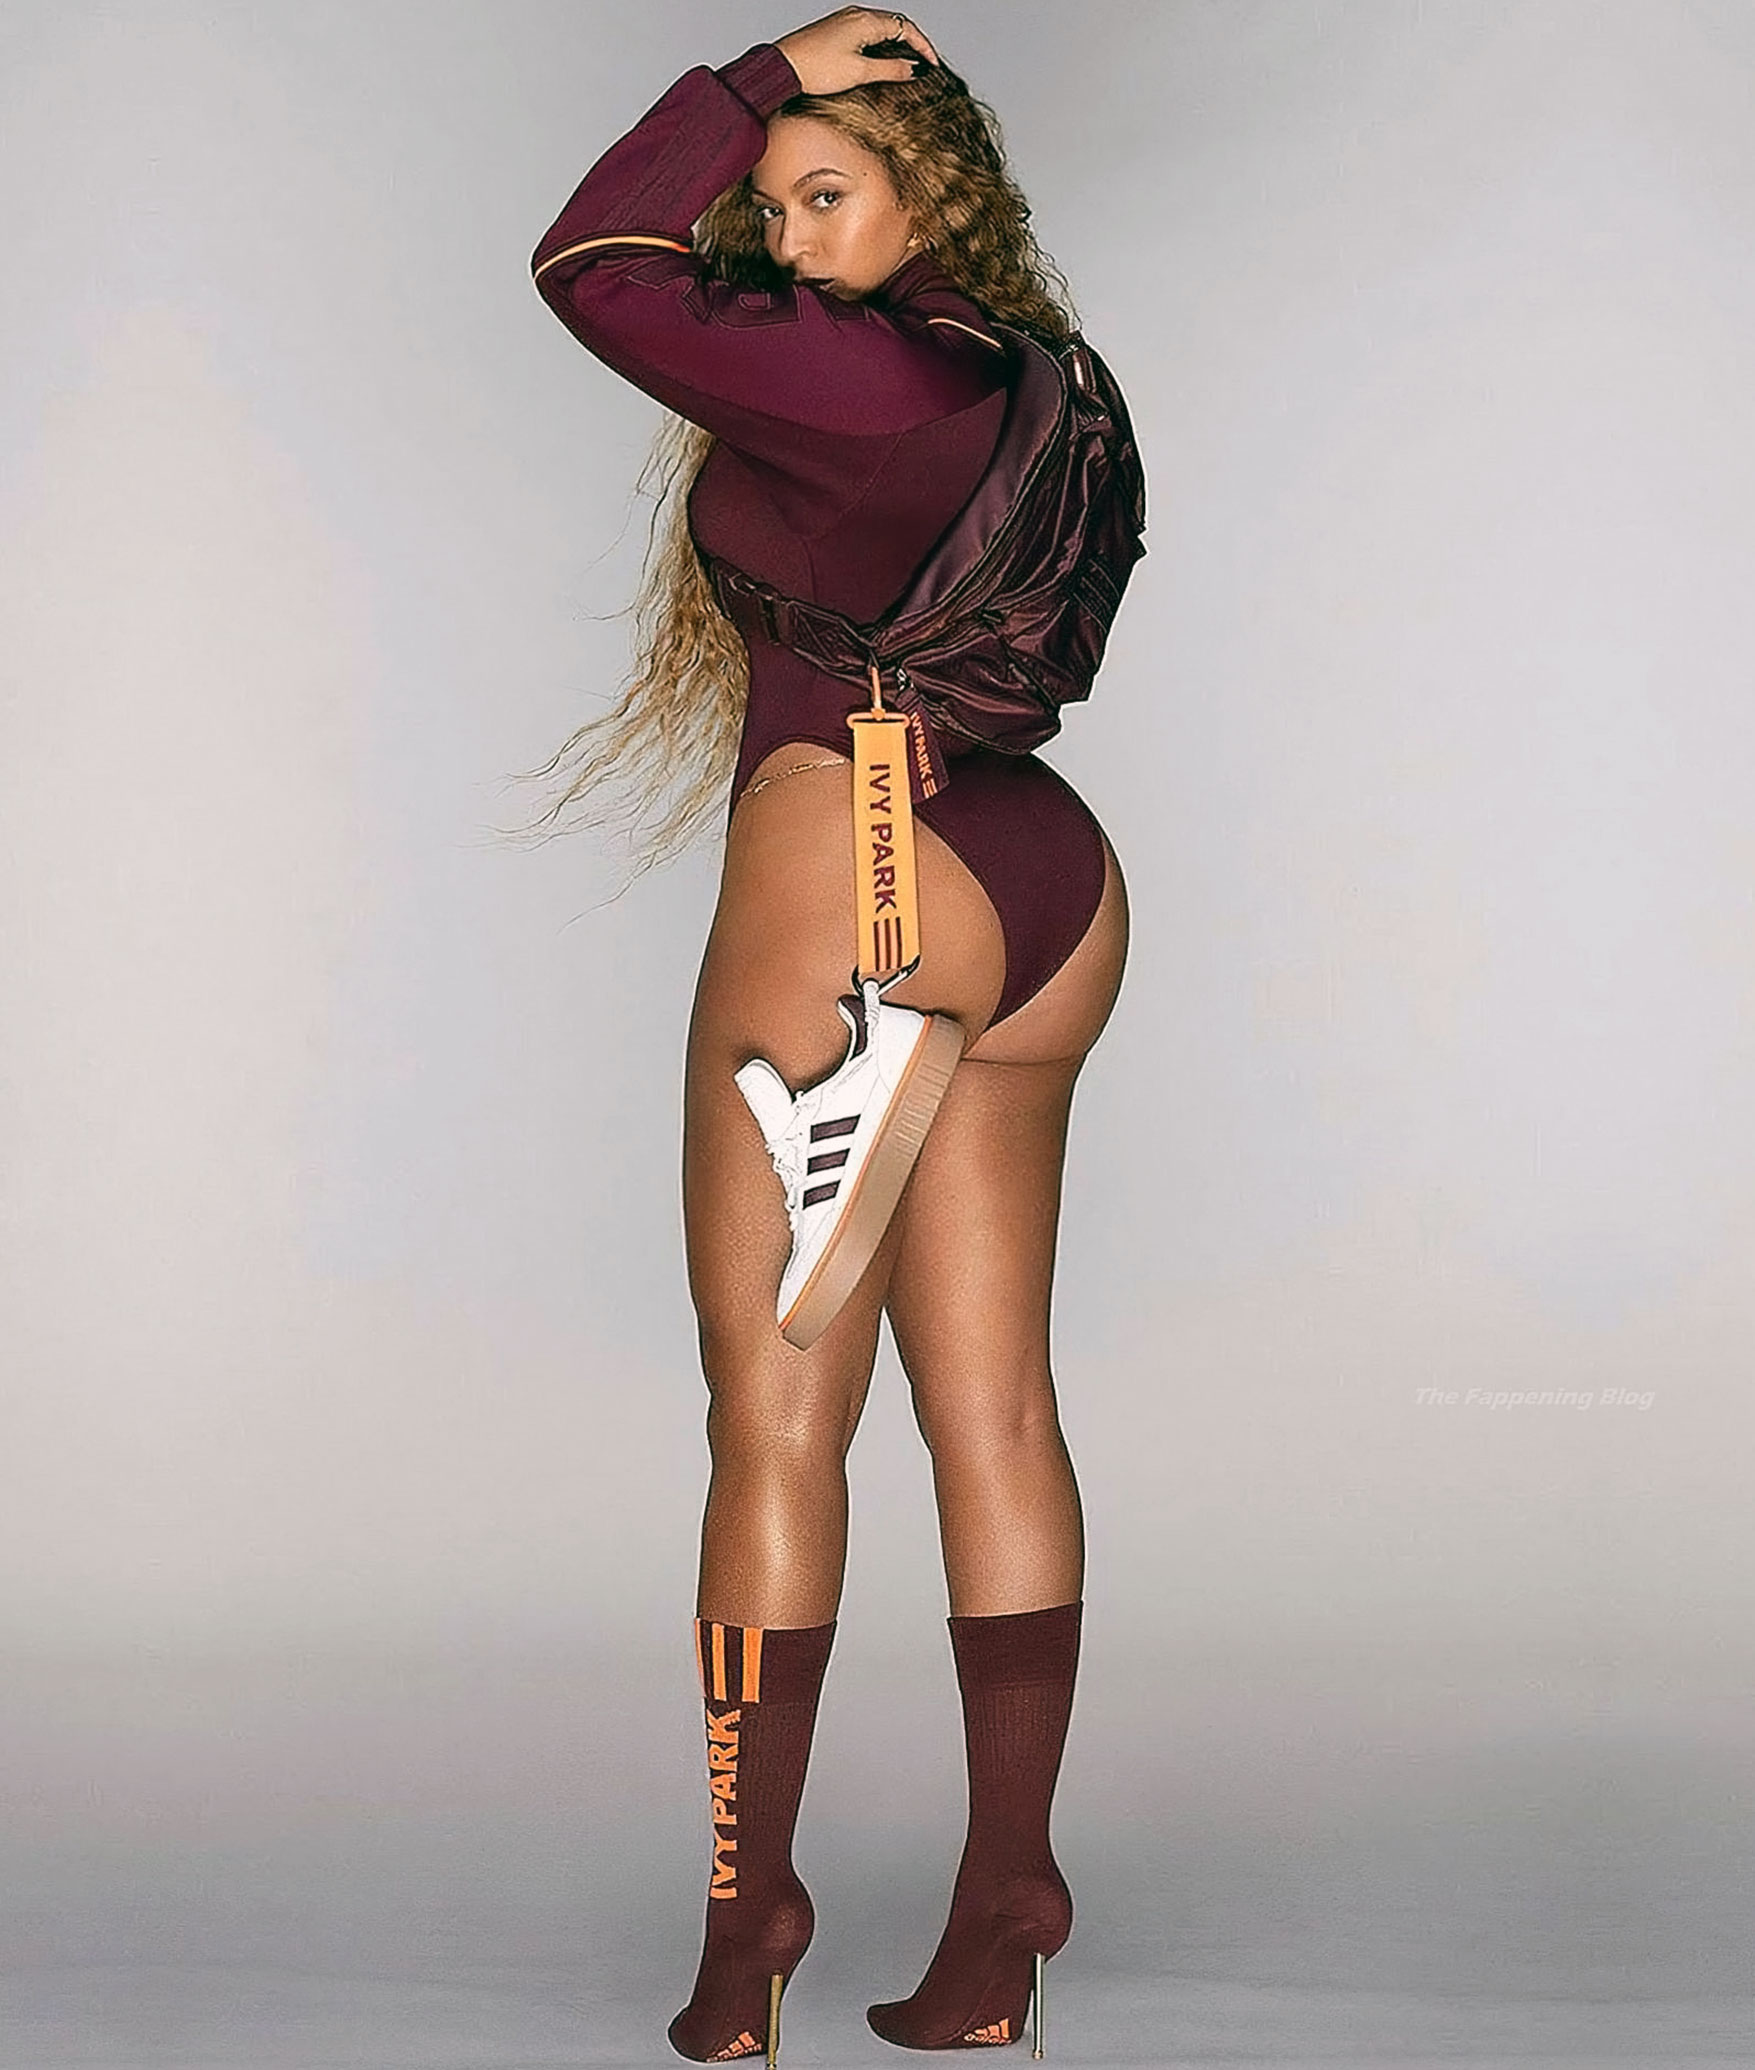 Beyonce booty porn photos